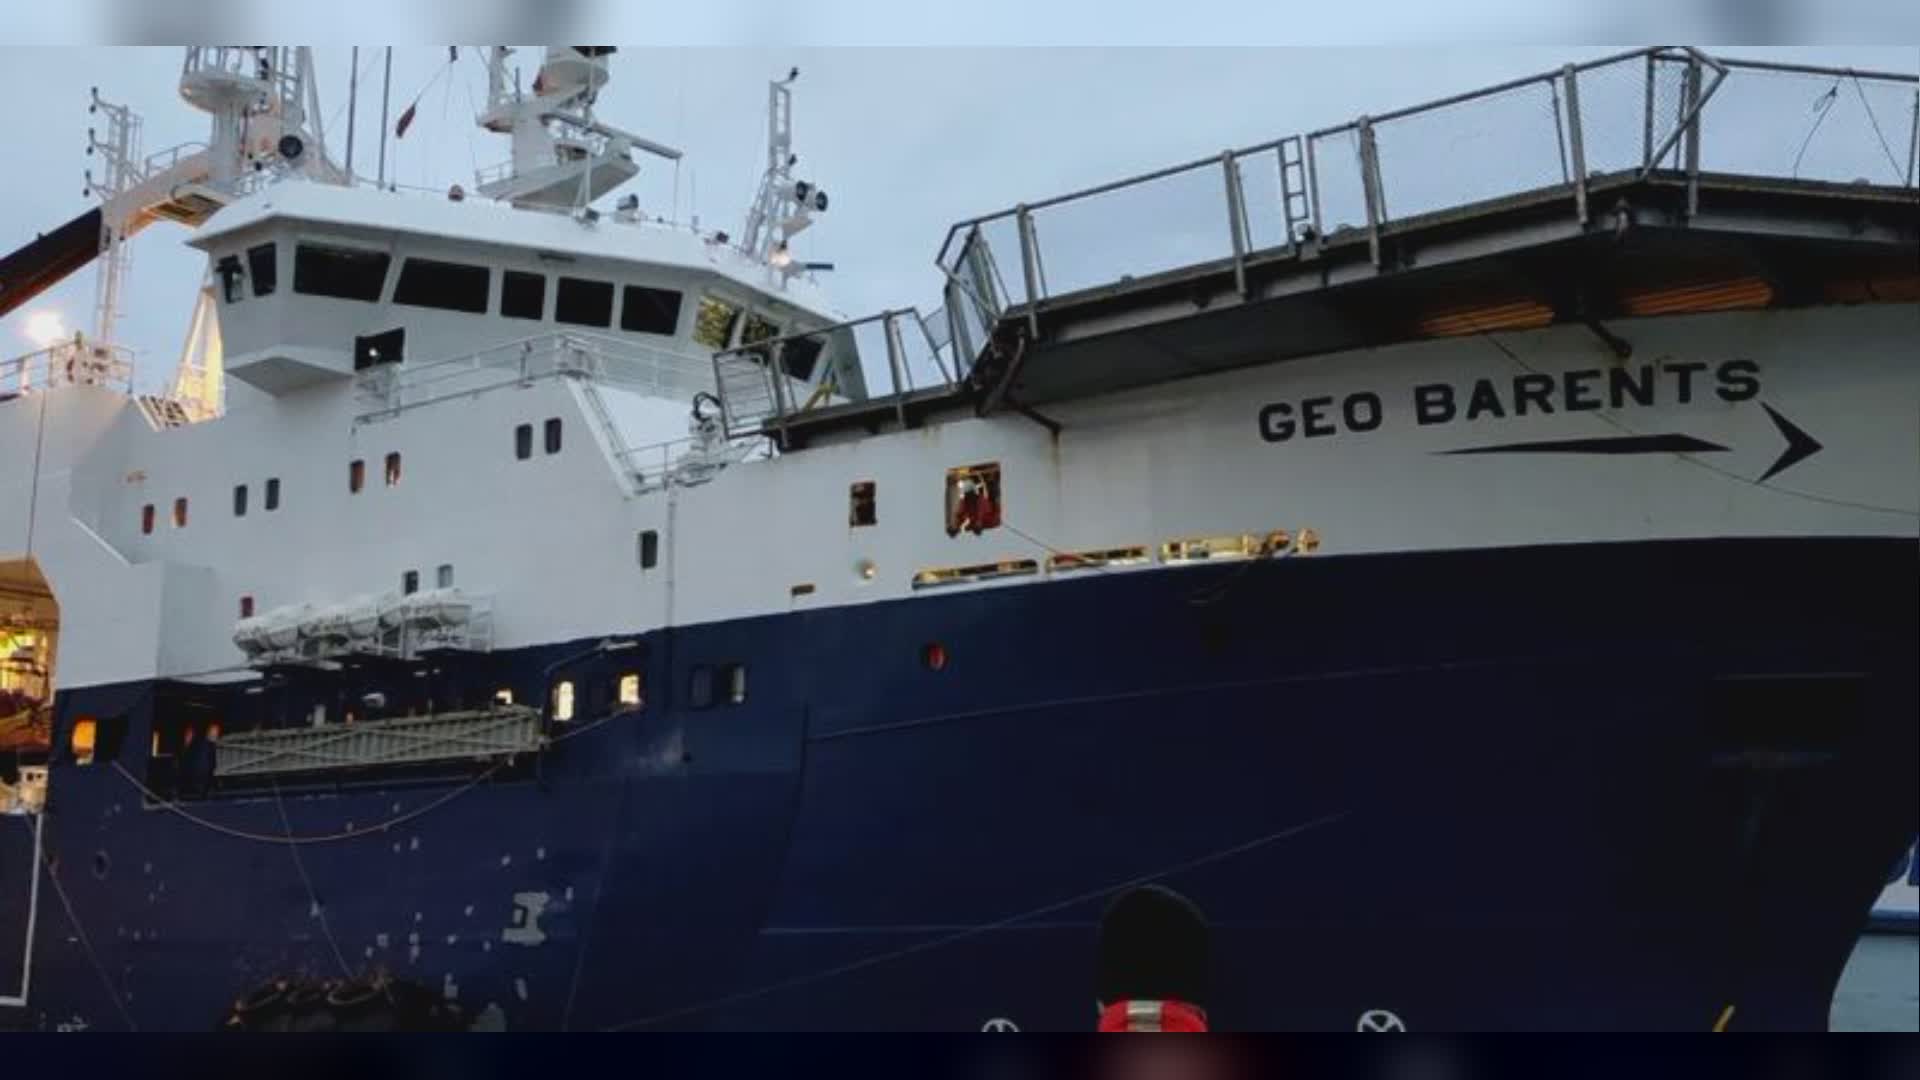 Genova: Geo Barents in arrivo con 146 migranti imbarcati al largo della Libia